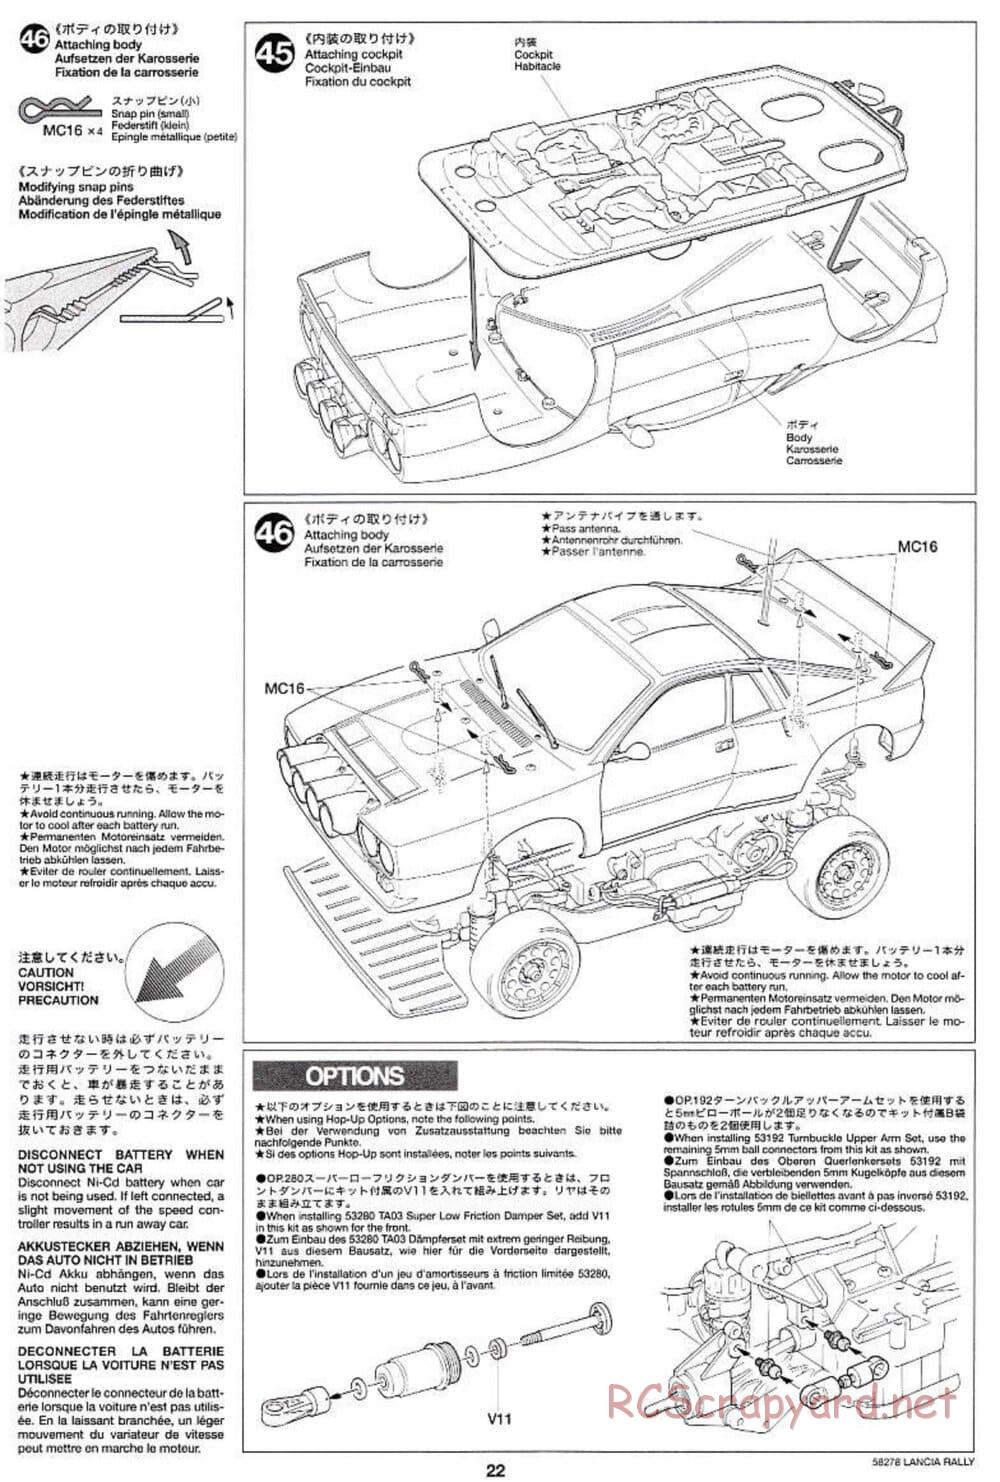 Tamiya - Lancia 037 Rally - TA-03RS Chassis - Manual - Page 22